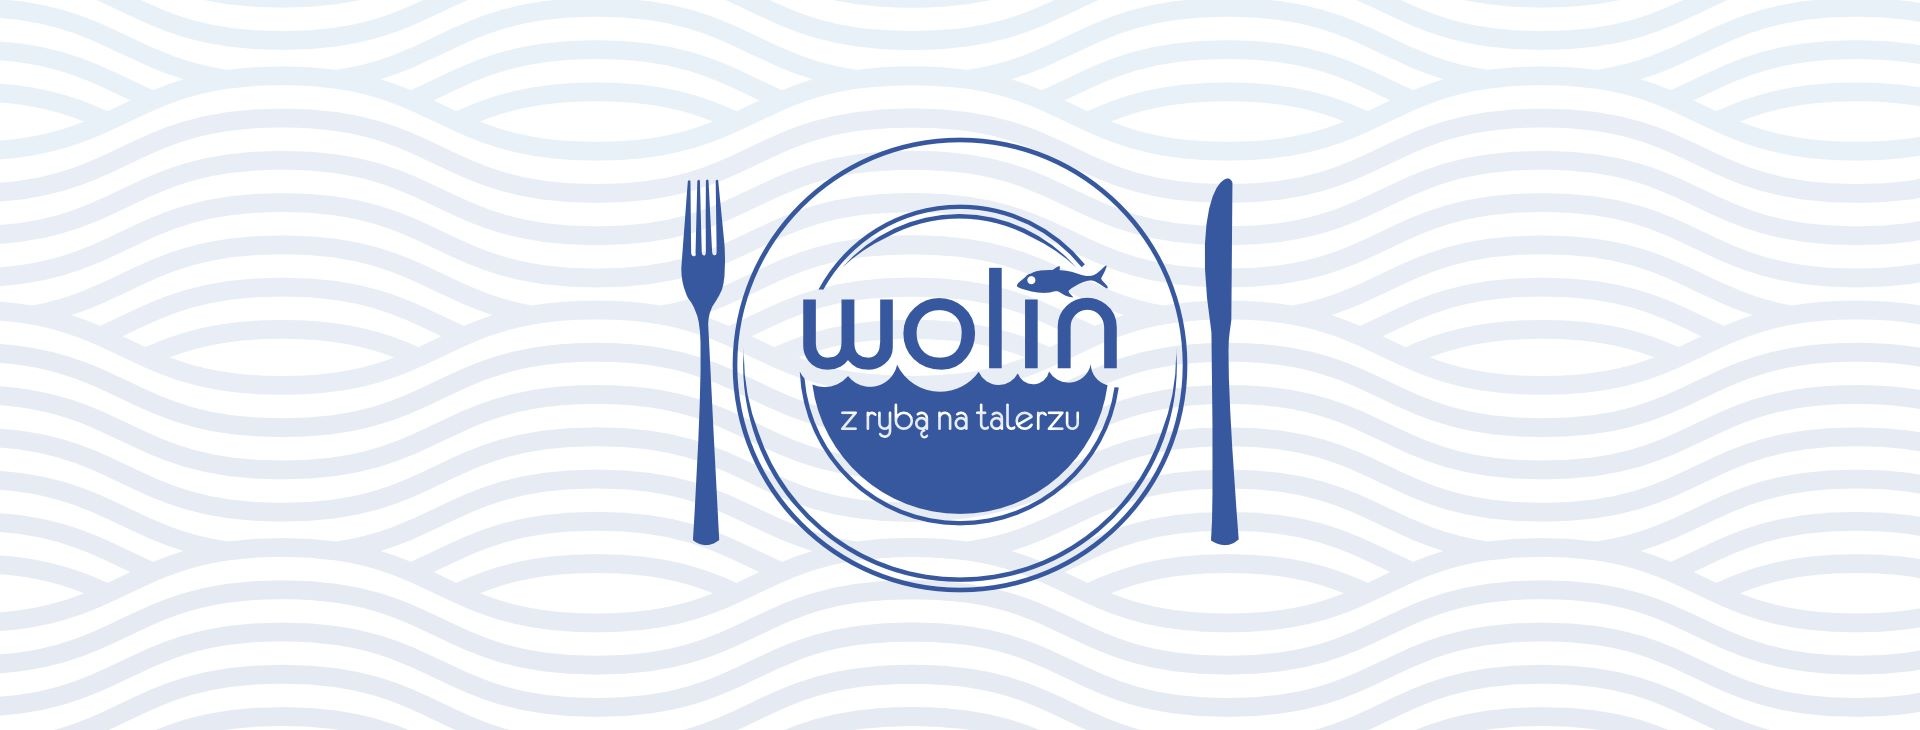 Wolin - z rybą na talerzu